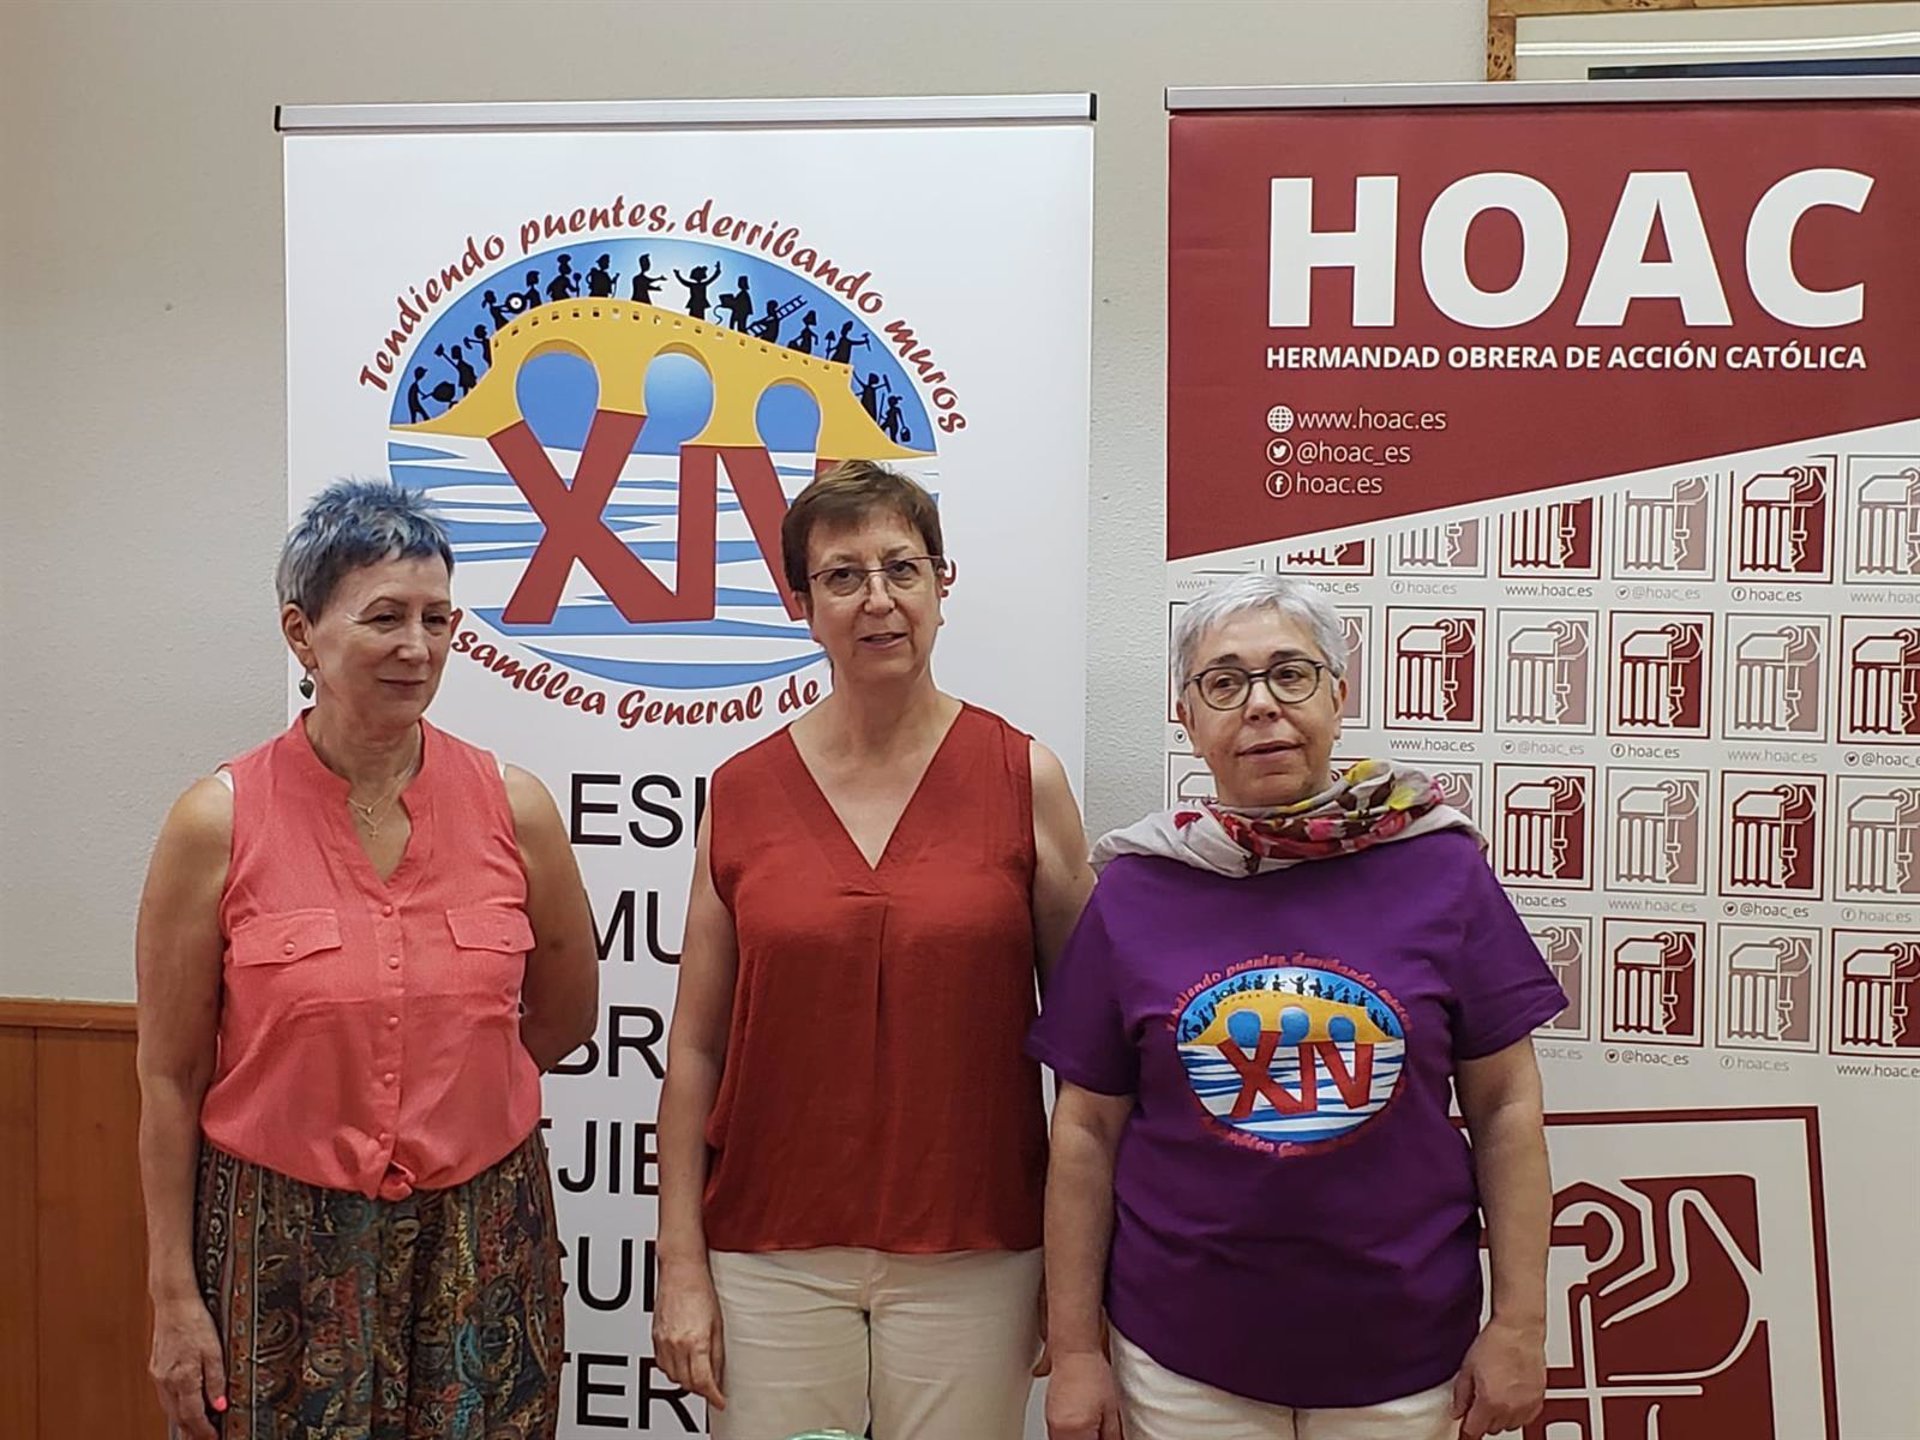 La Hermandad Obrera de Acción católica (HOAC) celebra en Segovia su décimo cuarta asamblea general, desde este sábado y hasta el 15 de agosto.